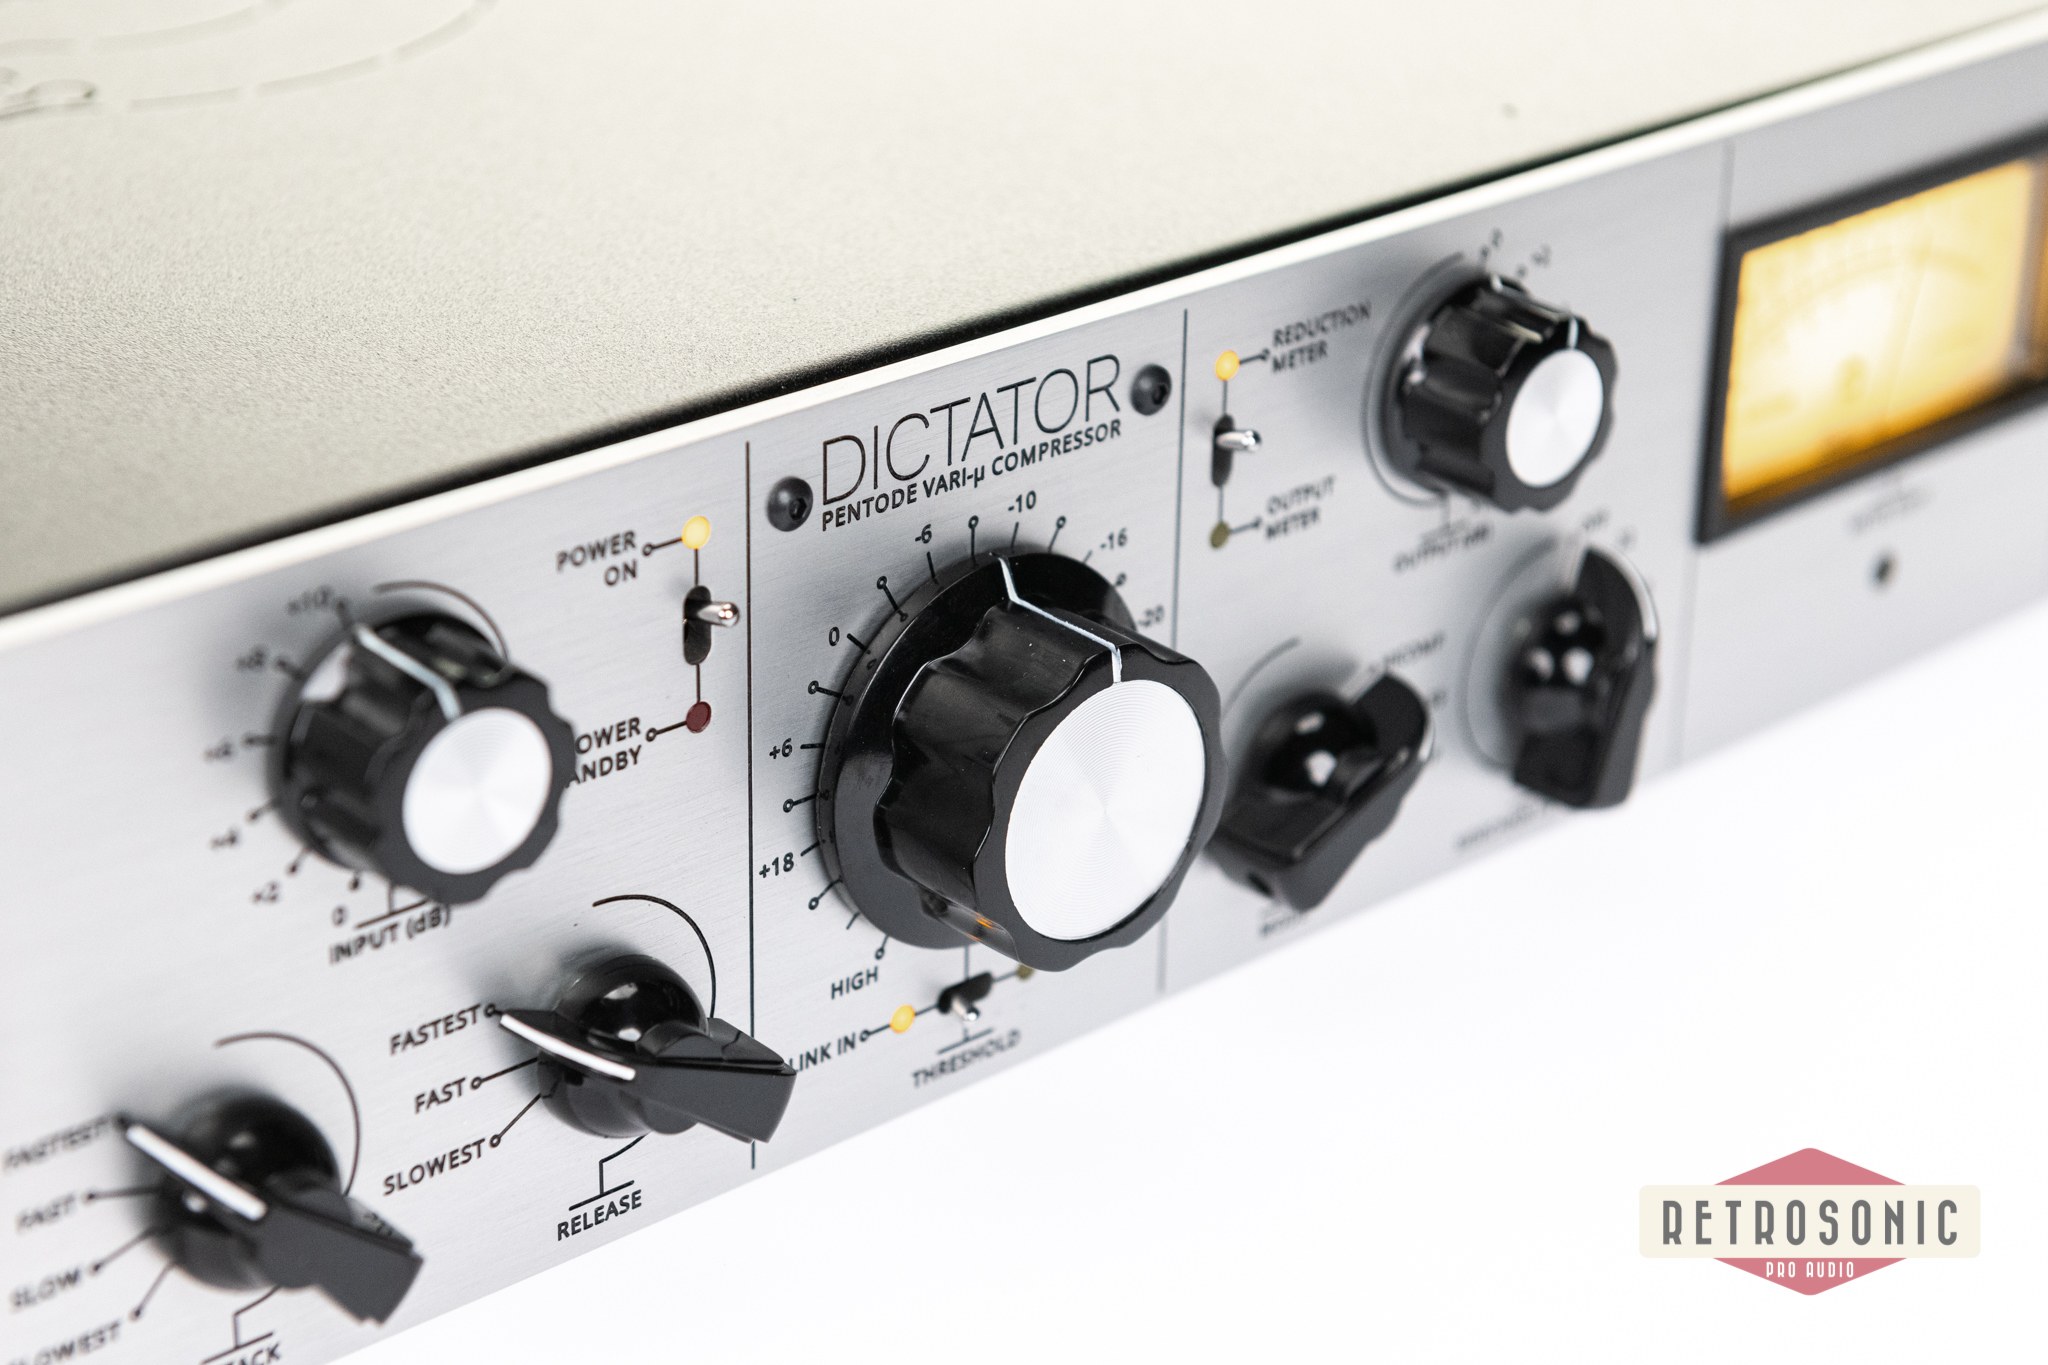 Gainlab Audio Dictator Stereo Pentode Vari-MU Compressor